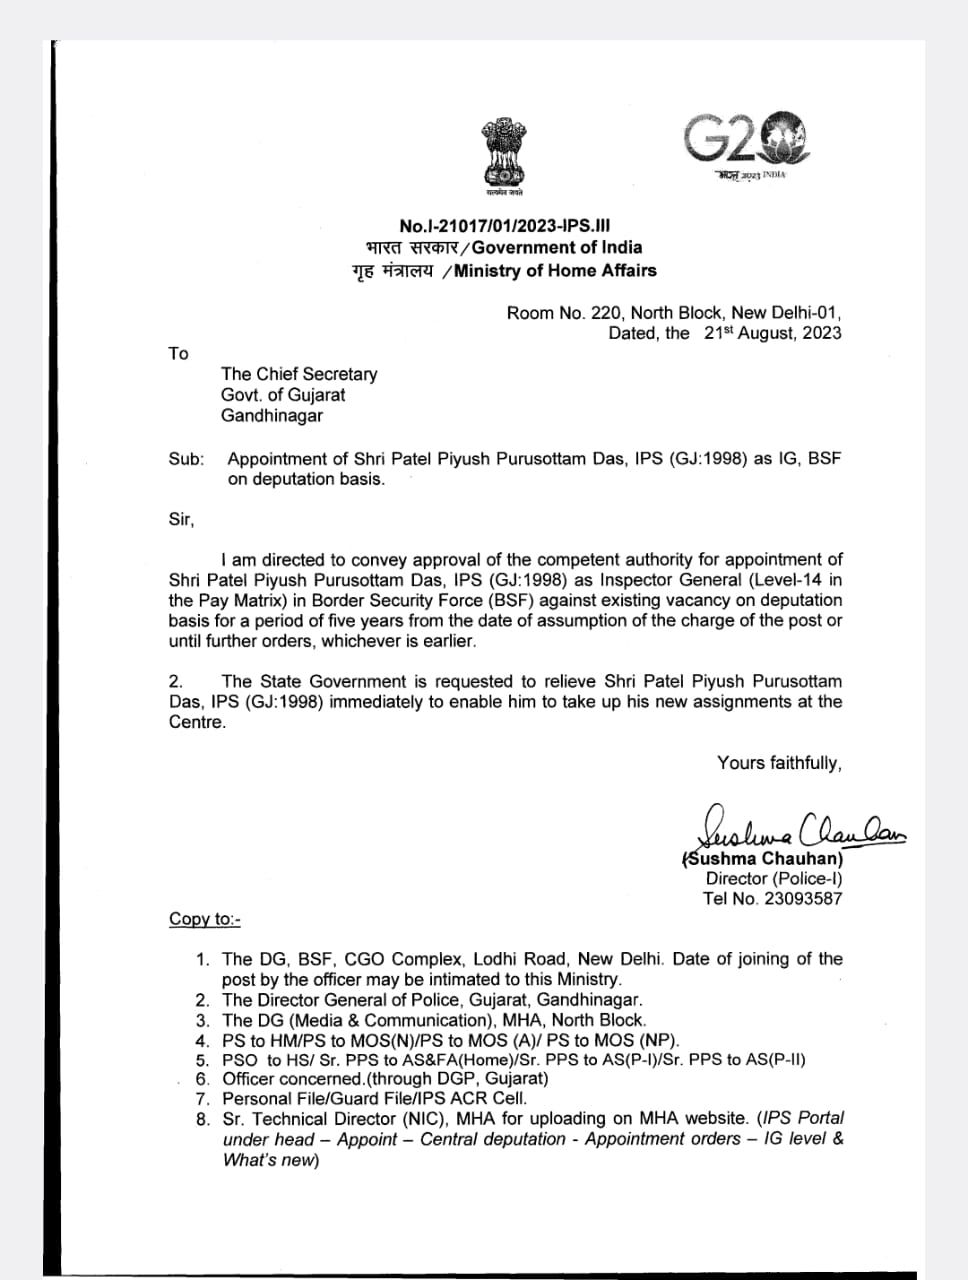 IPS પિયુષ પટેલની BSFના IG તરીકે નિમણૂક, કેન્દ્ર સરકારે ગુજરાત સરકારને કરી જાણ